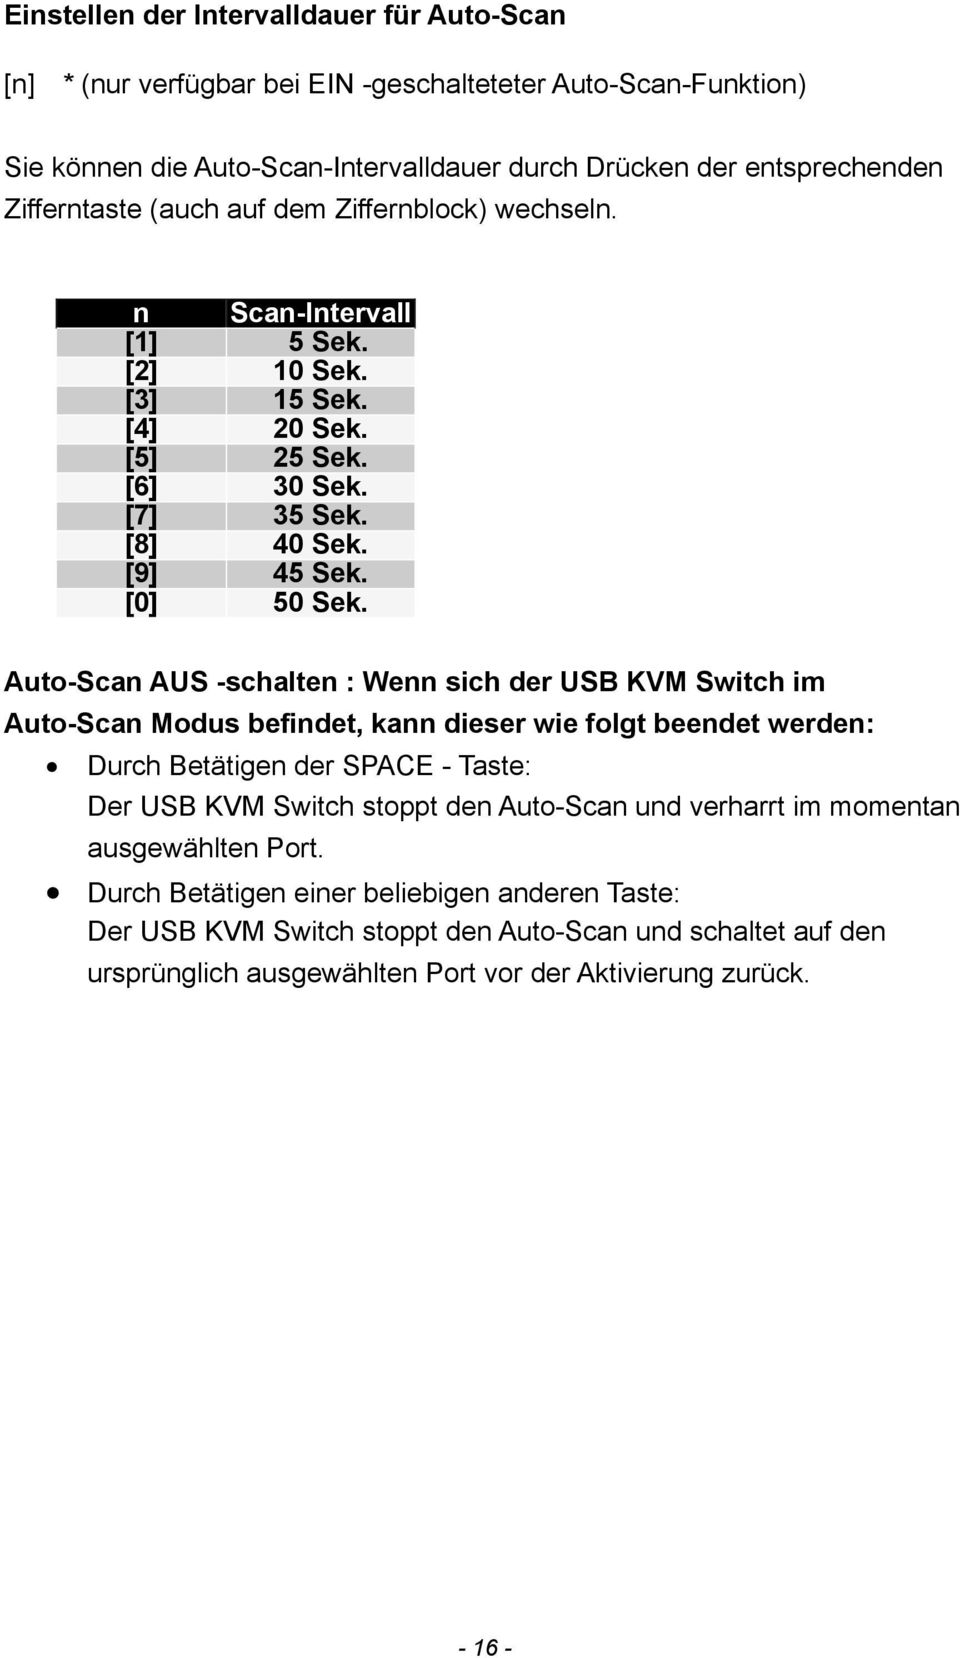 Auto-Scan AUS -schalten : Wenn sich der USB KVM Switch im Auto-Scan Modus befindet, kann dieser wie folgt beendet werden: Durch Betätigen der SPACE - Taste: Der USB KVM Switch stoppt den